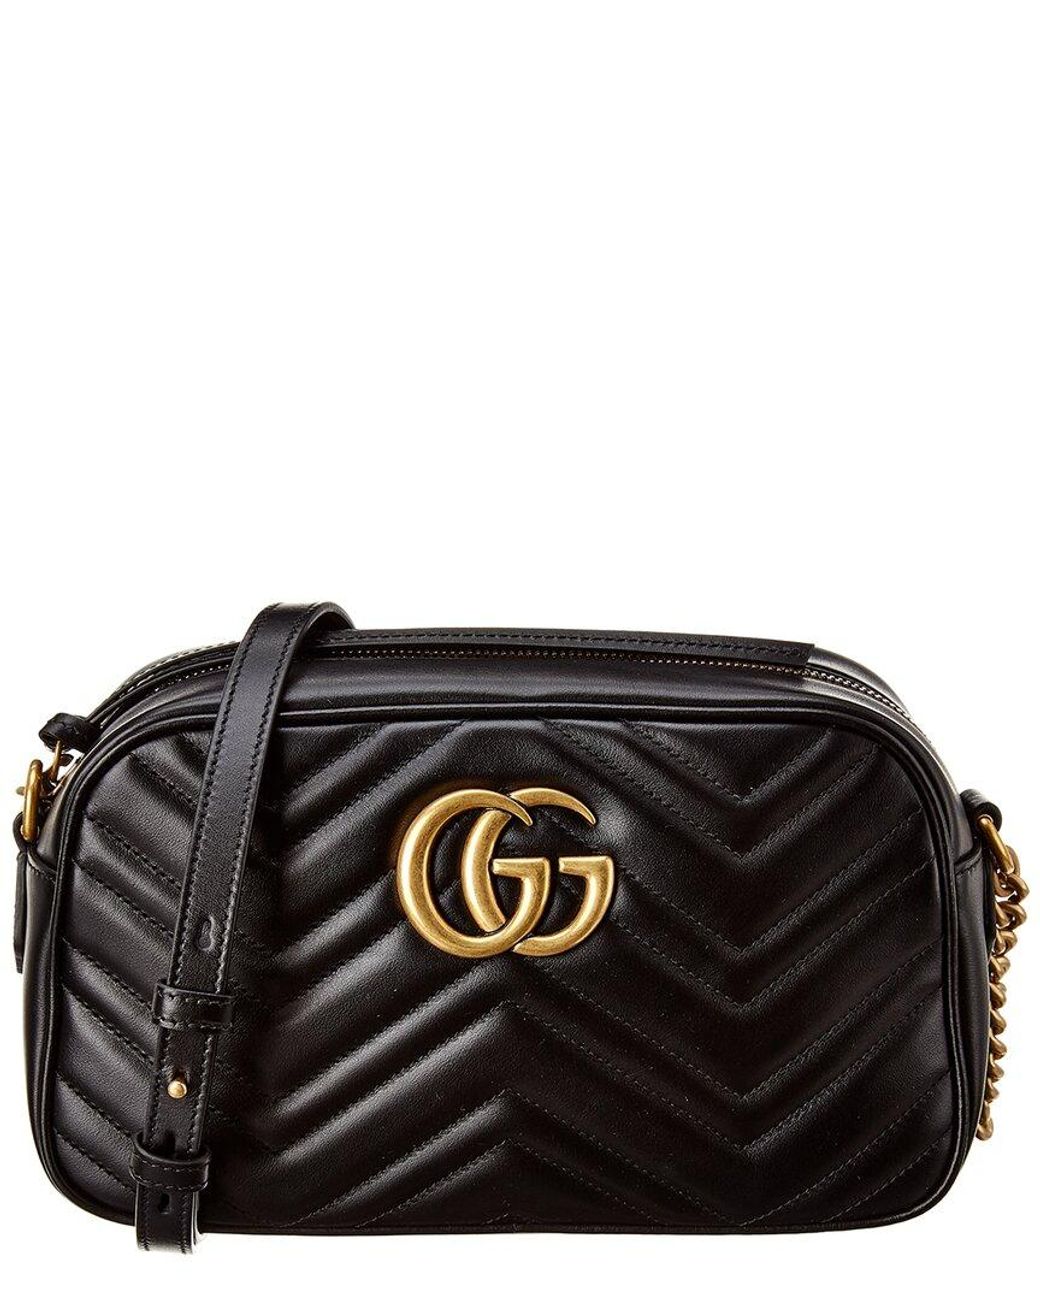 Gucci GG Marmont Mini Leather Bag - Black - Fablle